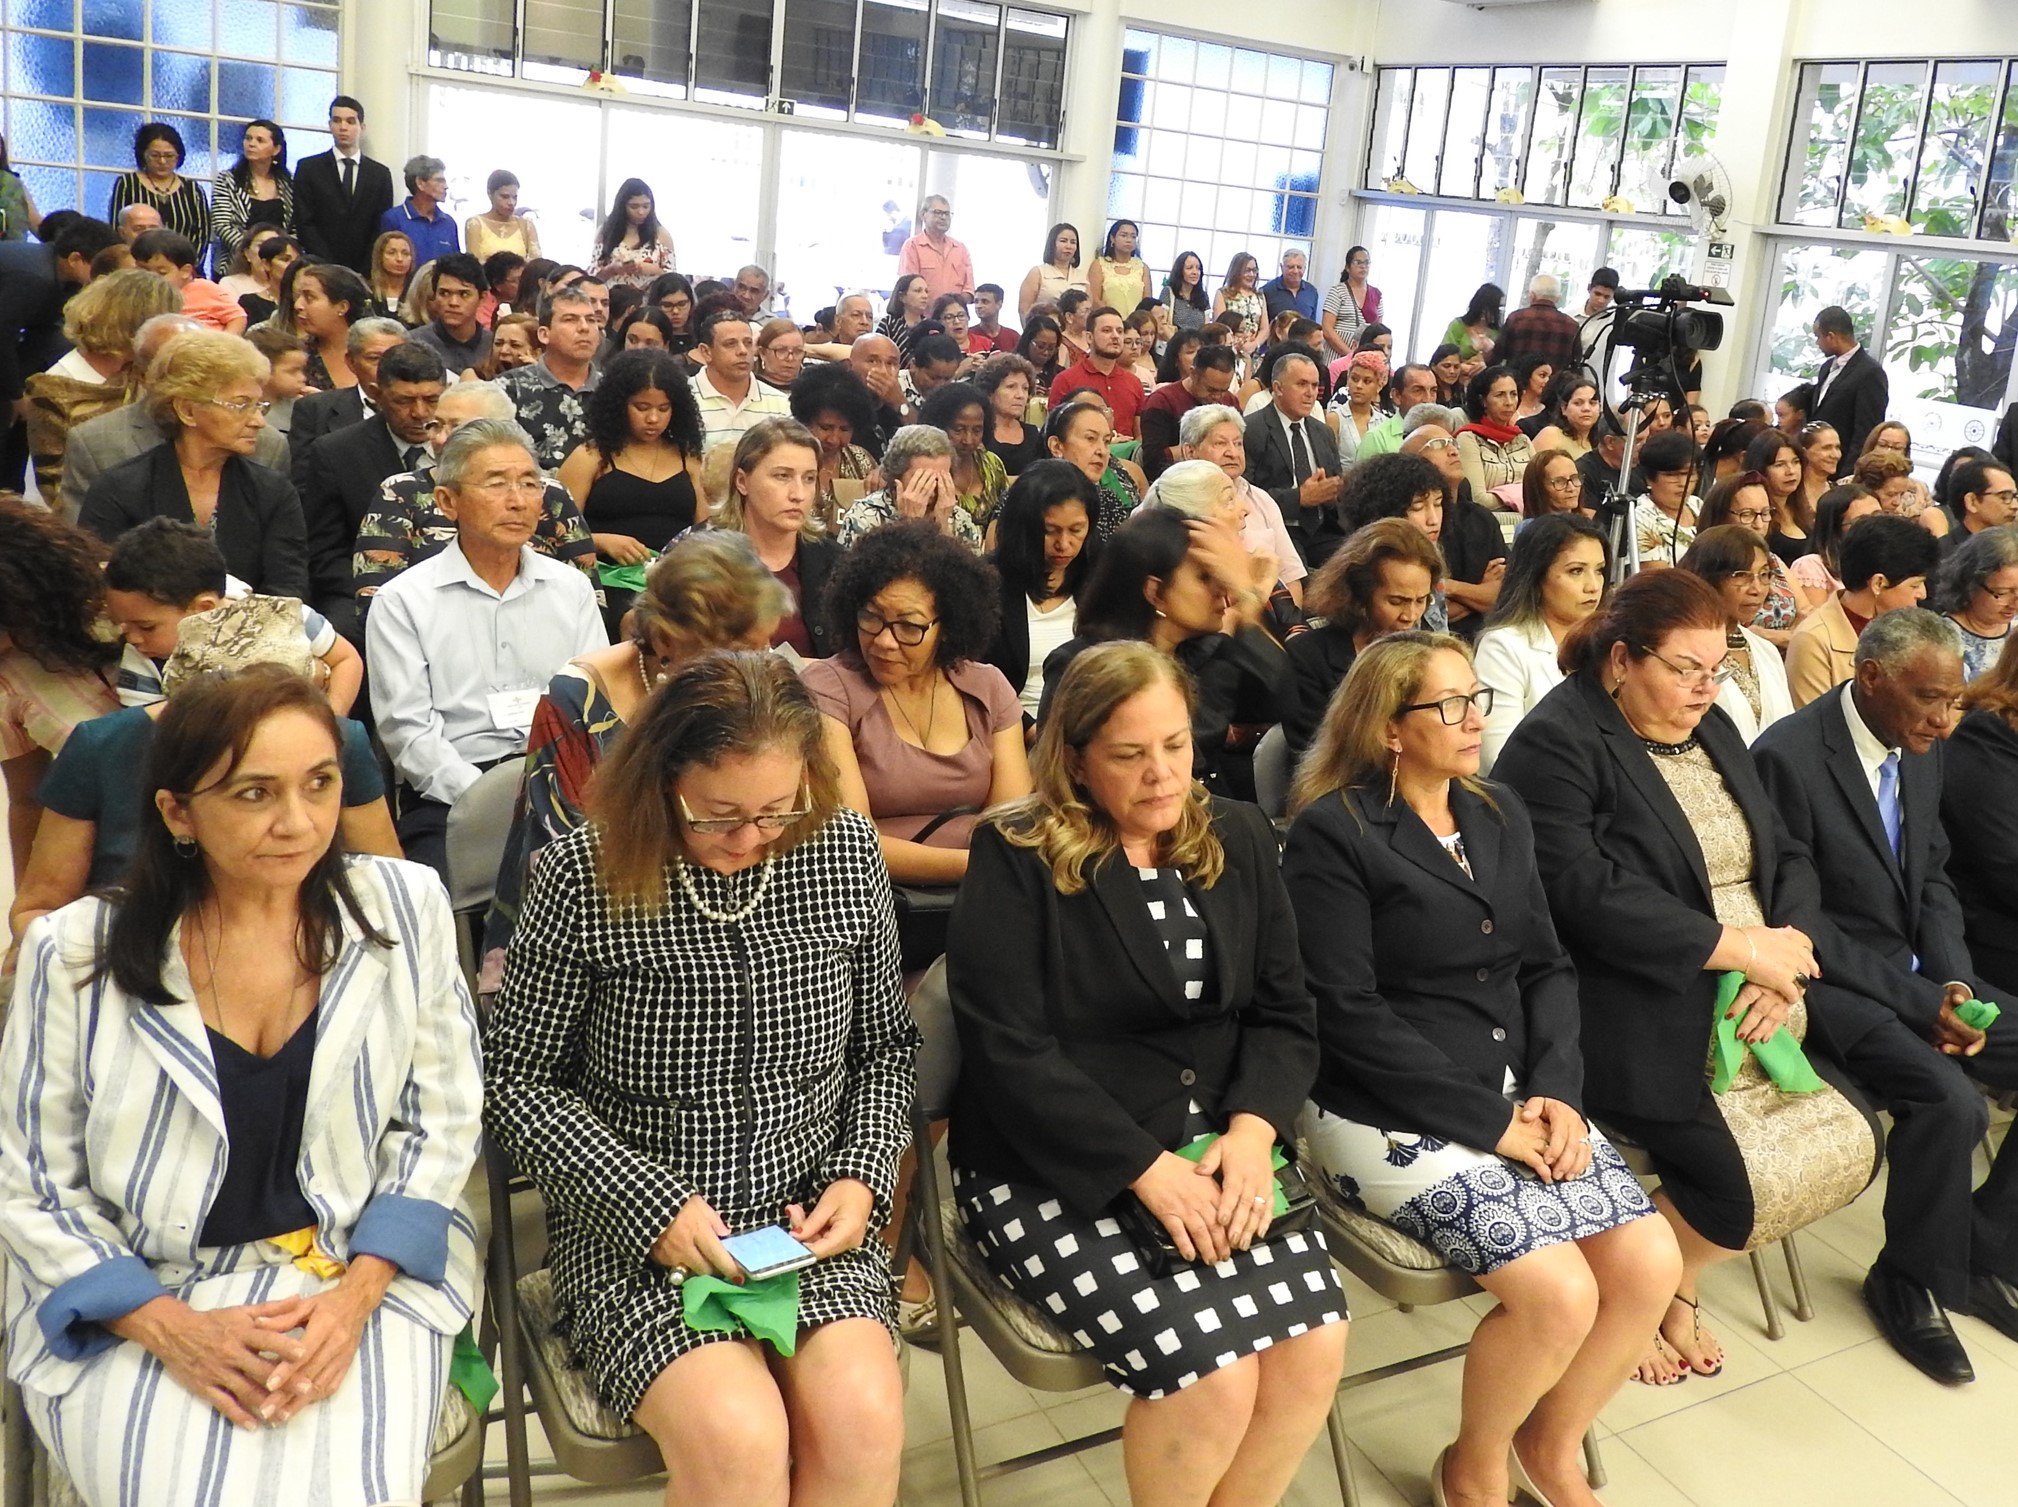 Igreja Manaus (AM) envolve 605 pessoas em Culto e atividade de Johrei